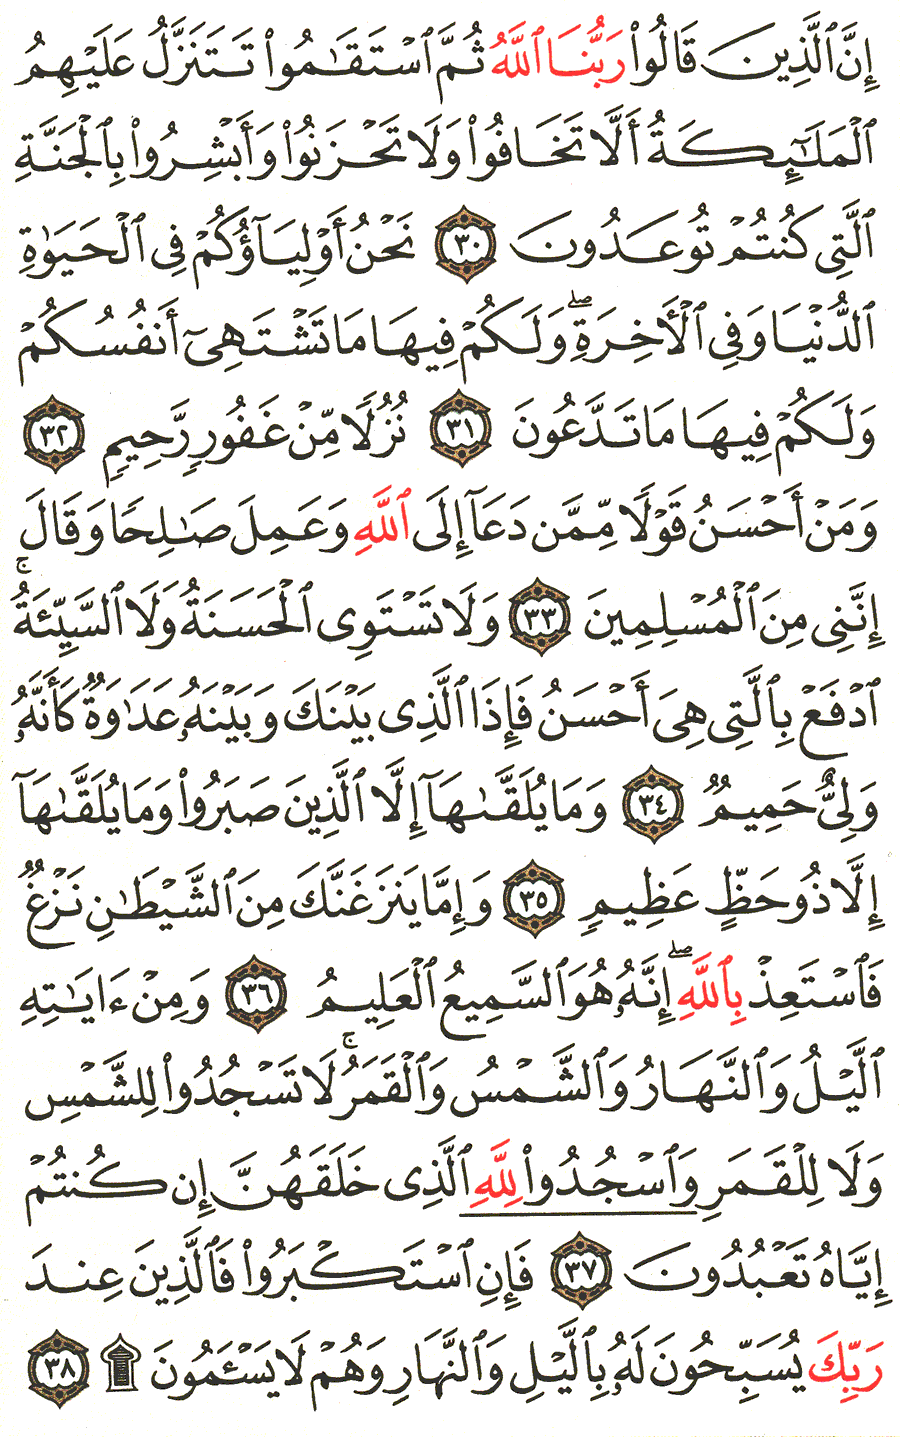 الصفحة 480 من القرآن الكريم